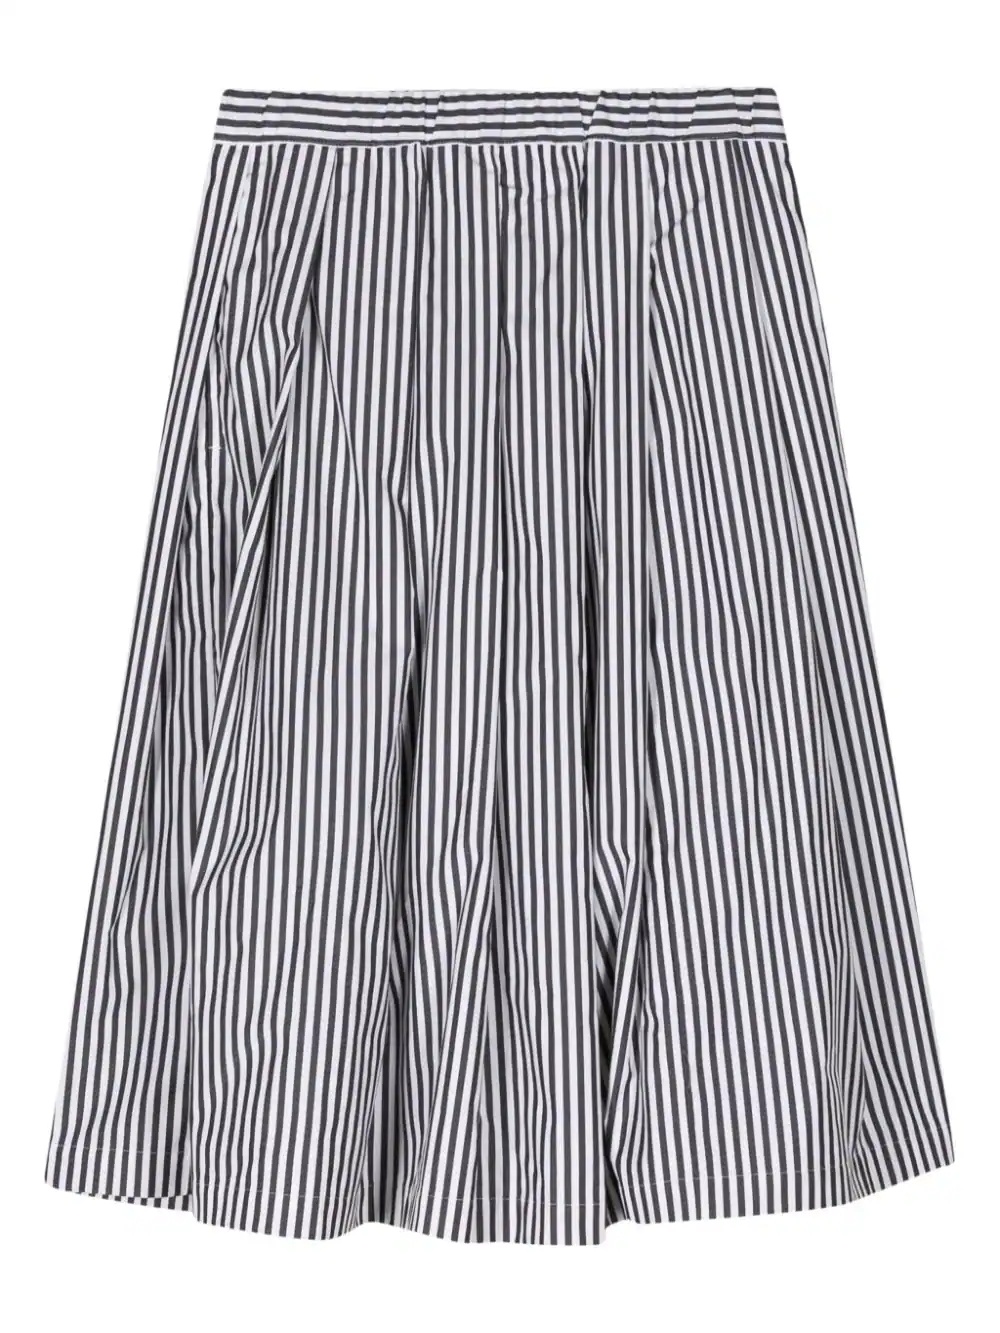 Stripe Pleated Skirt - 1